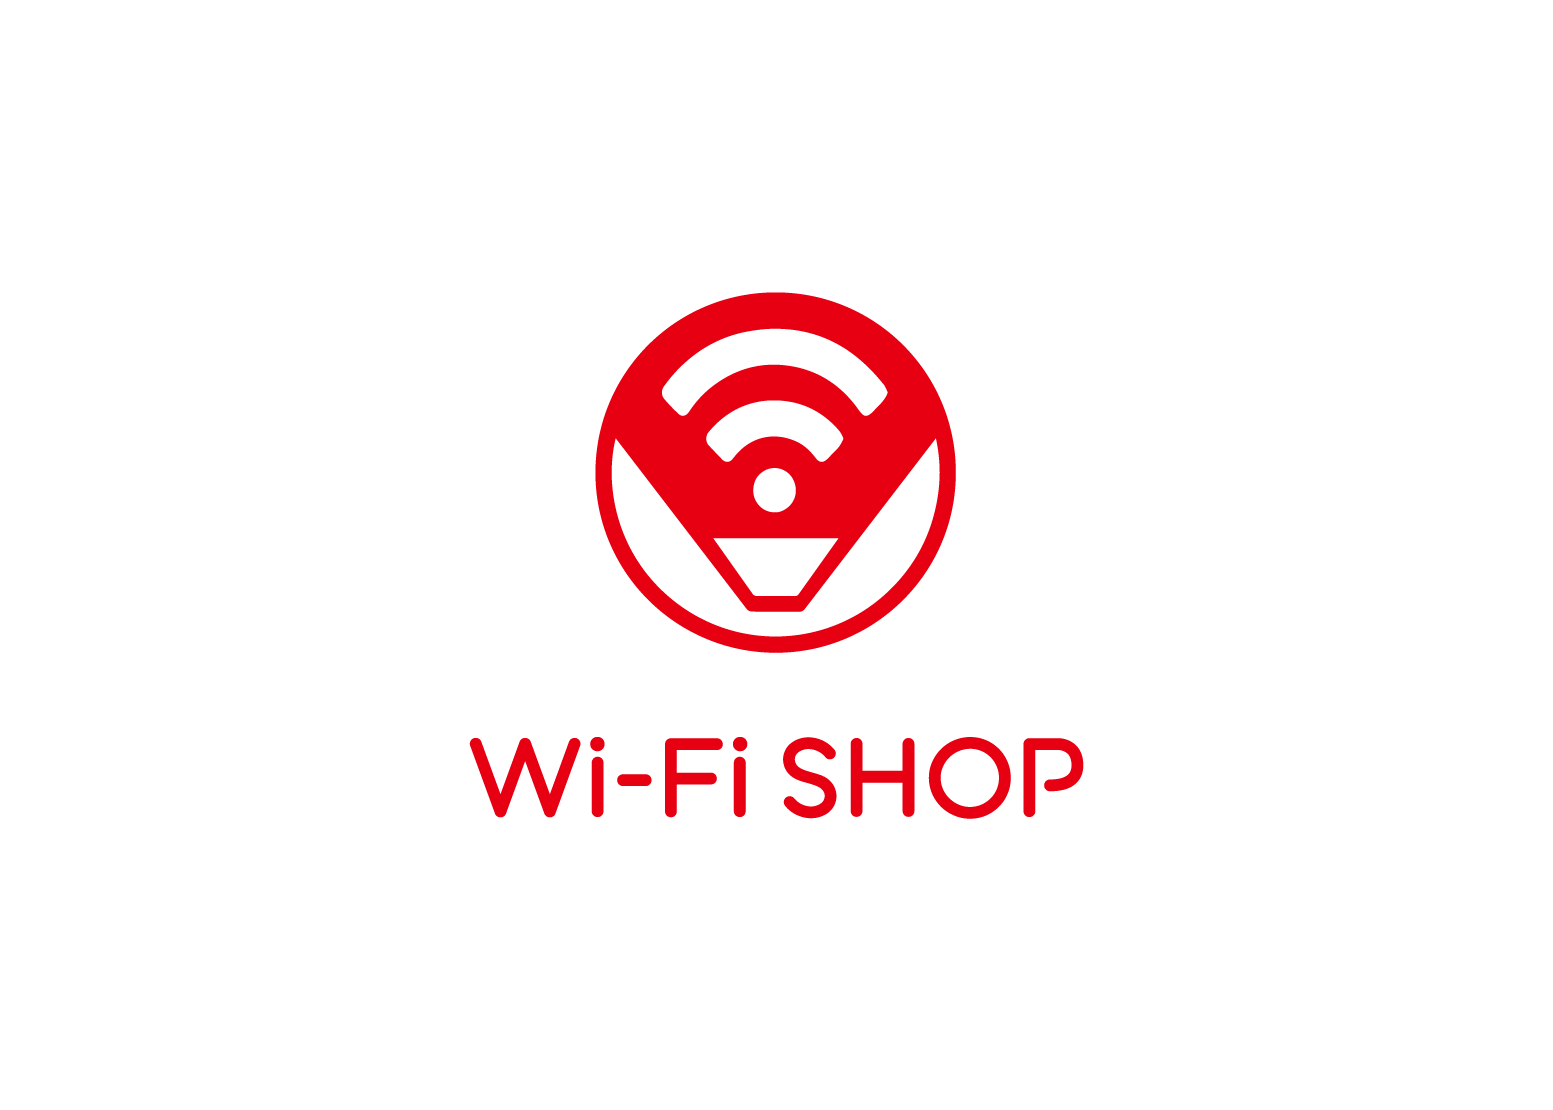 Wi-Fi SHOP